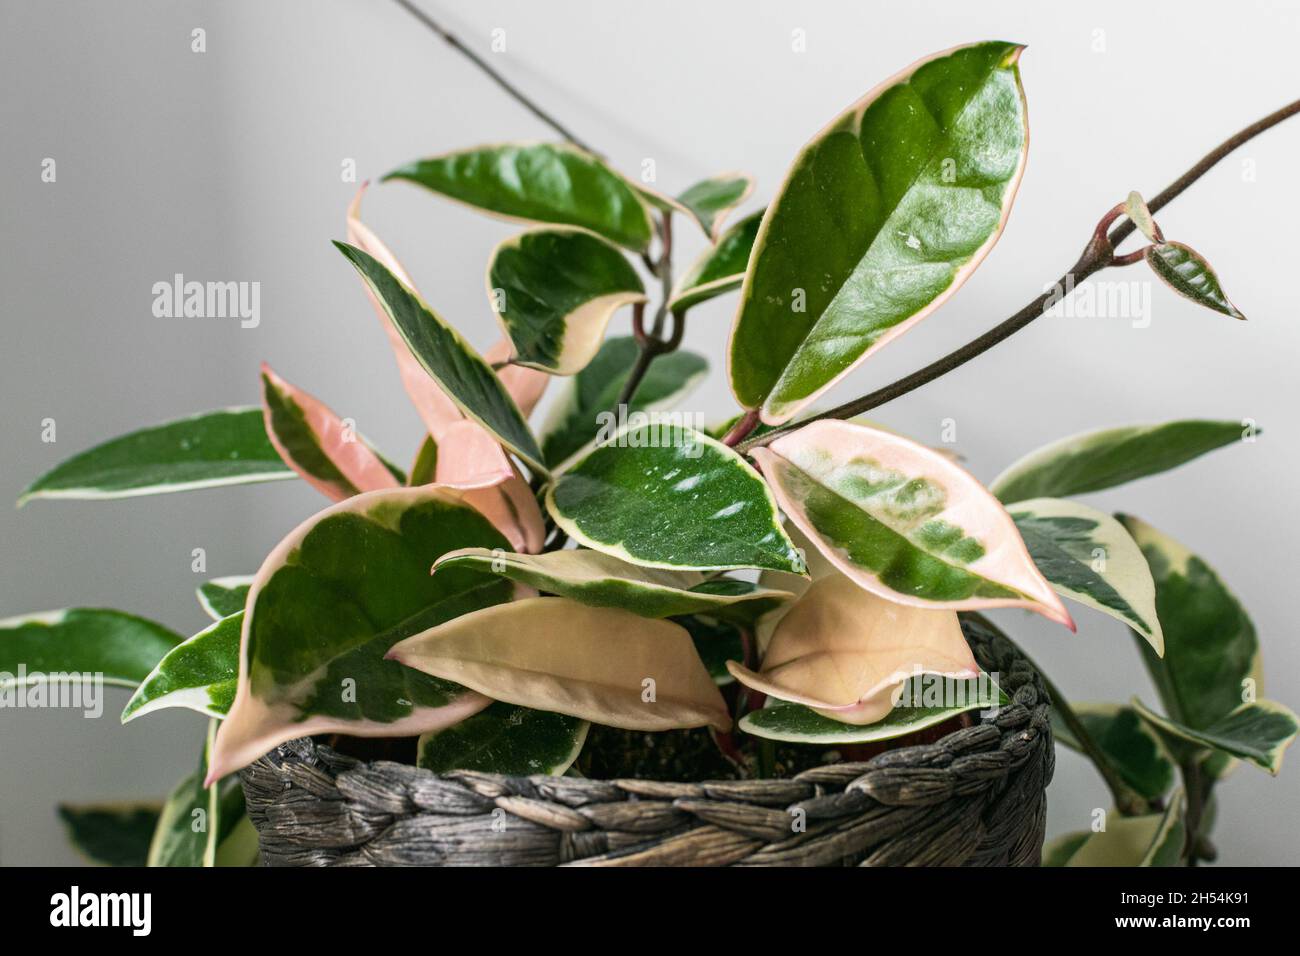 Fogliame variegato di hoya carnosa variegata 'Krimson Queen' su sfondo bianco. Esotico dettaglio di piante casalinghe alla moda con una notevole varietà. Foto Stock